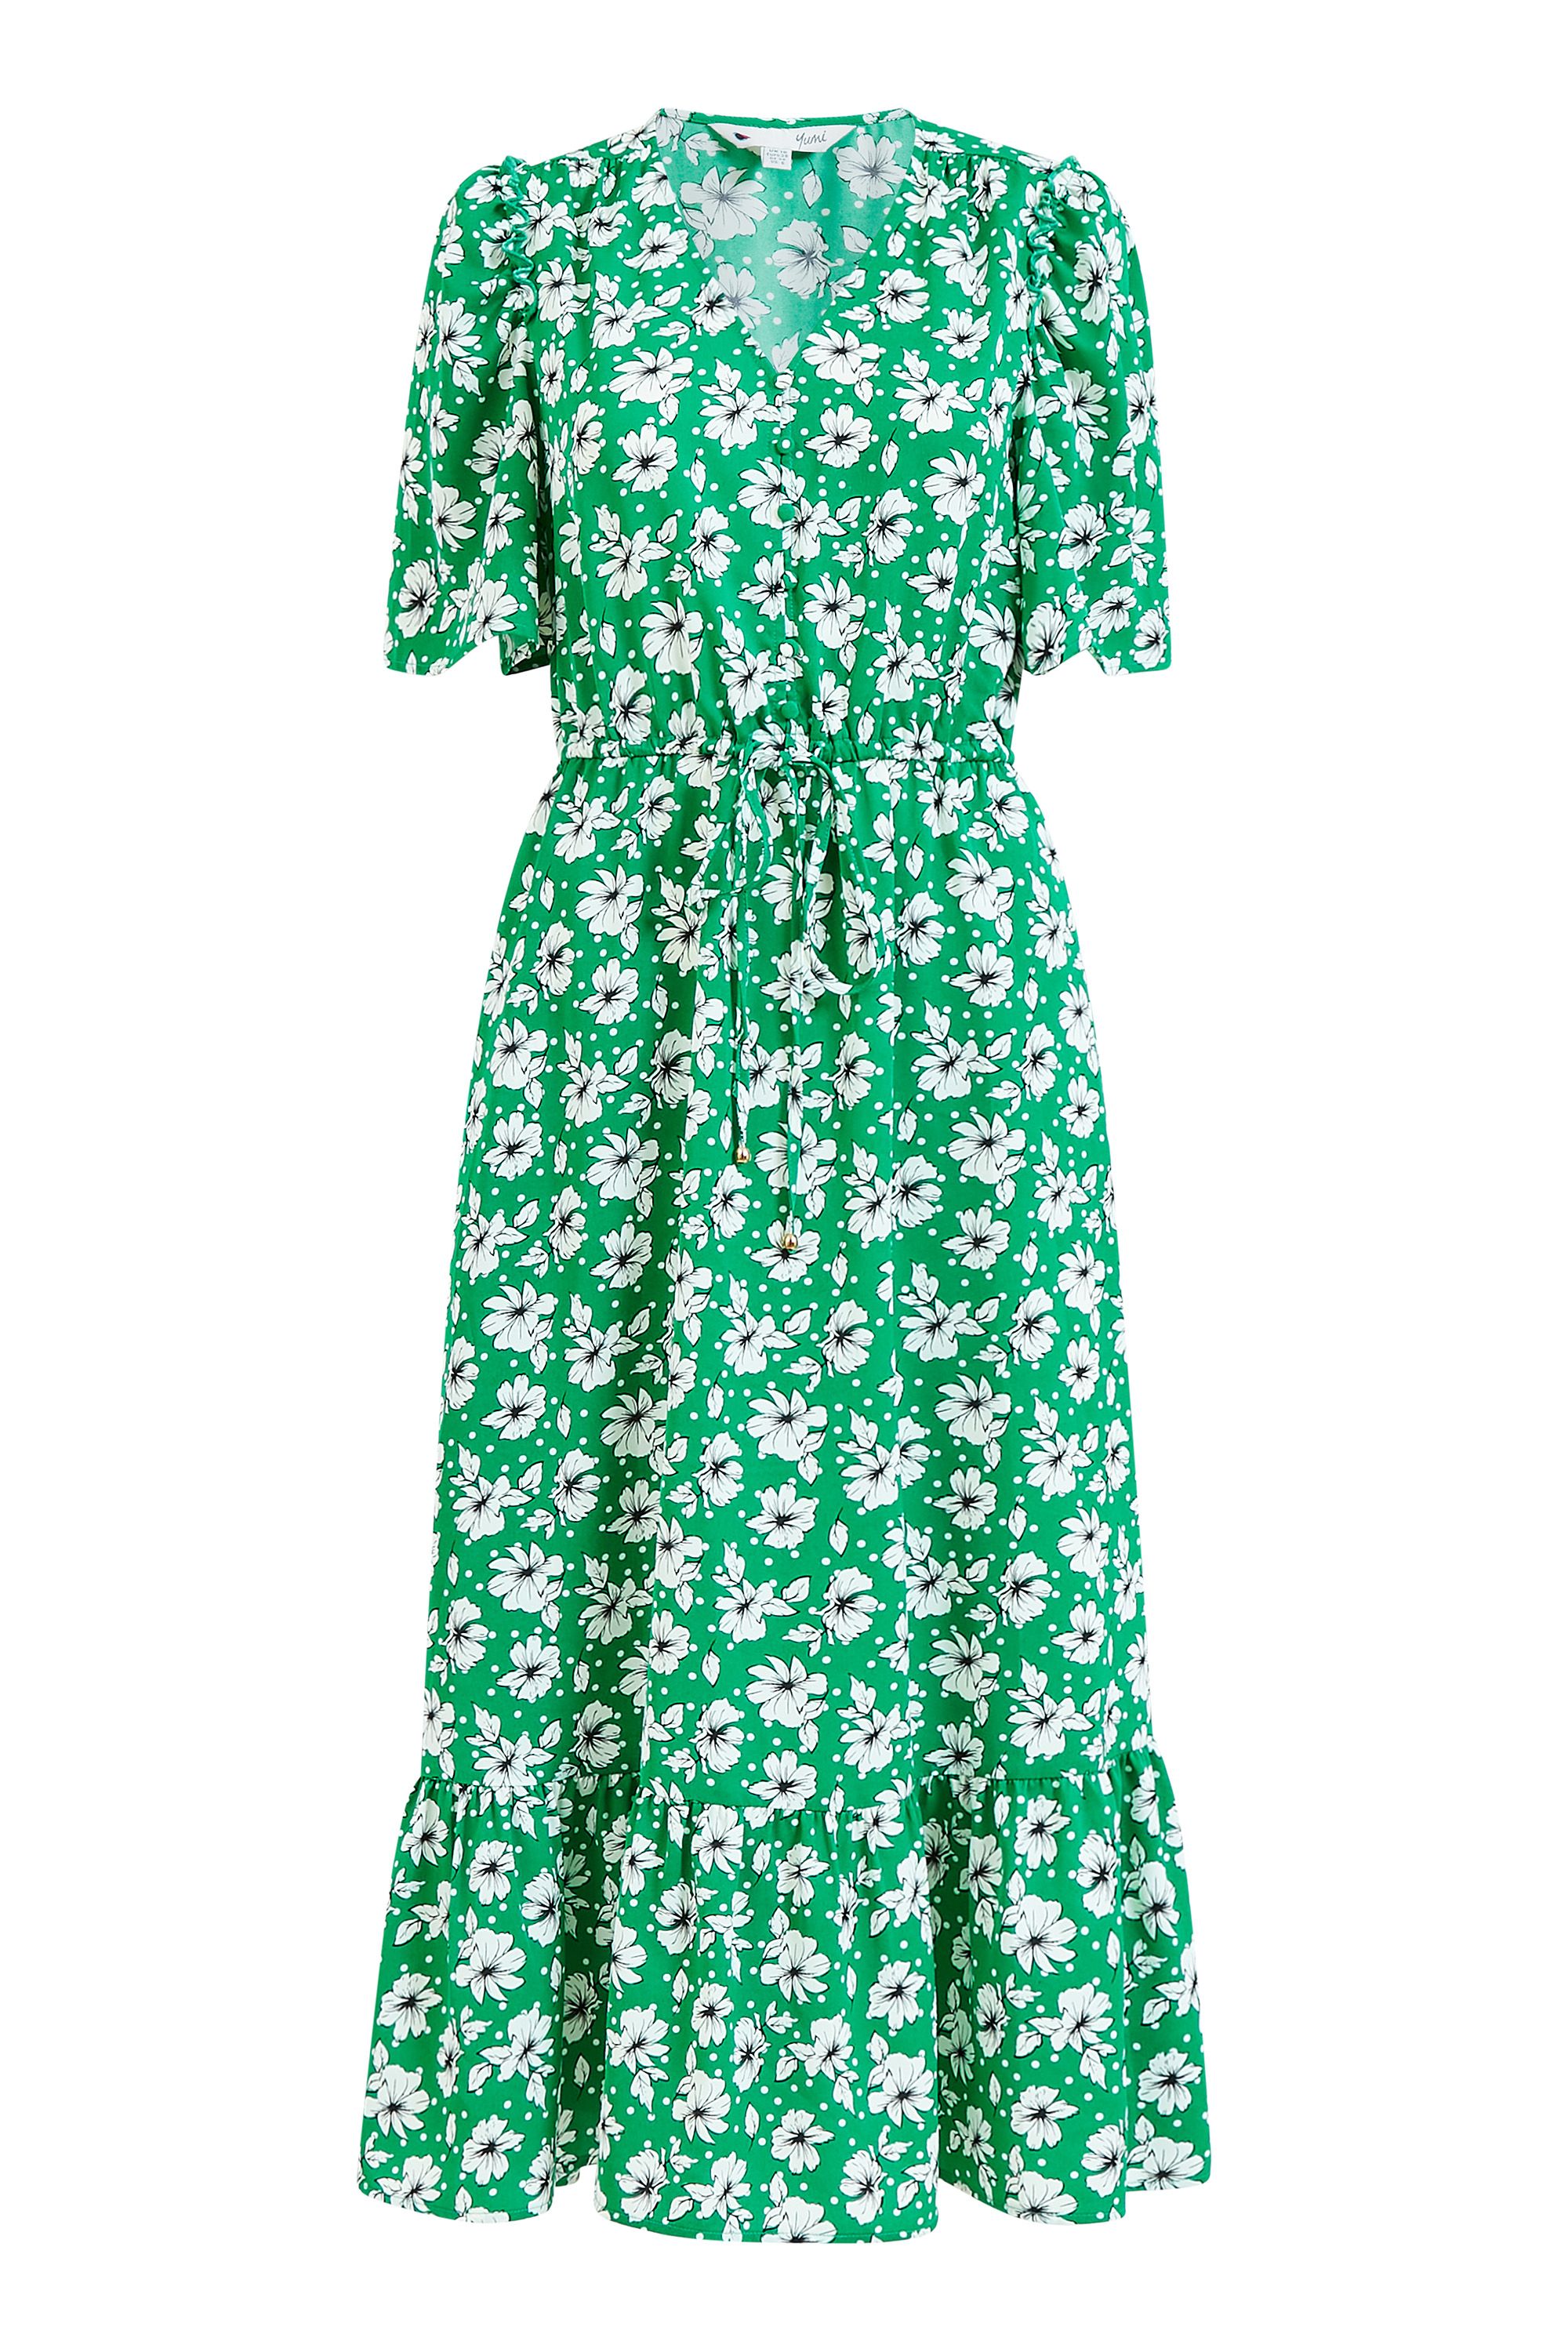 Yumi Green Flower And Spot Print Midi Dress